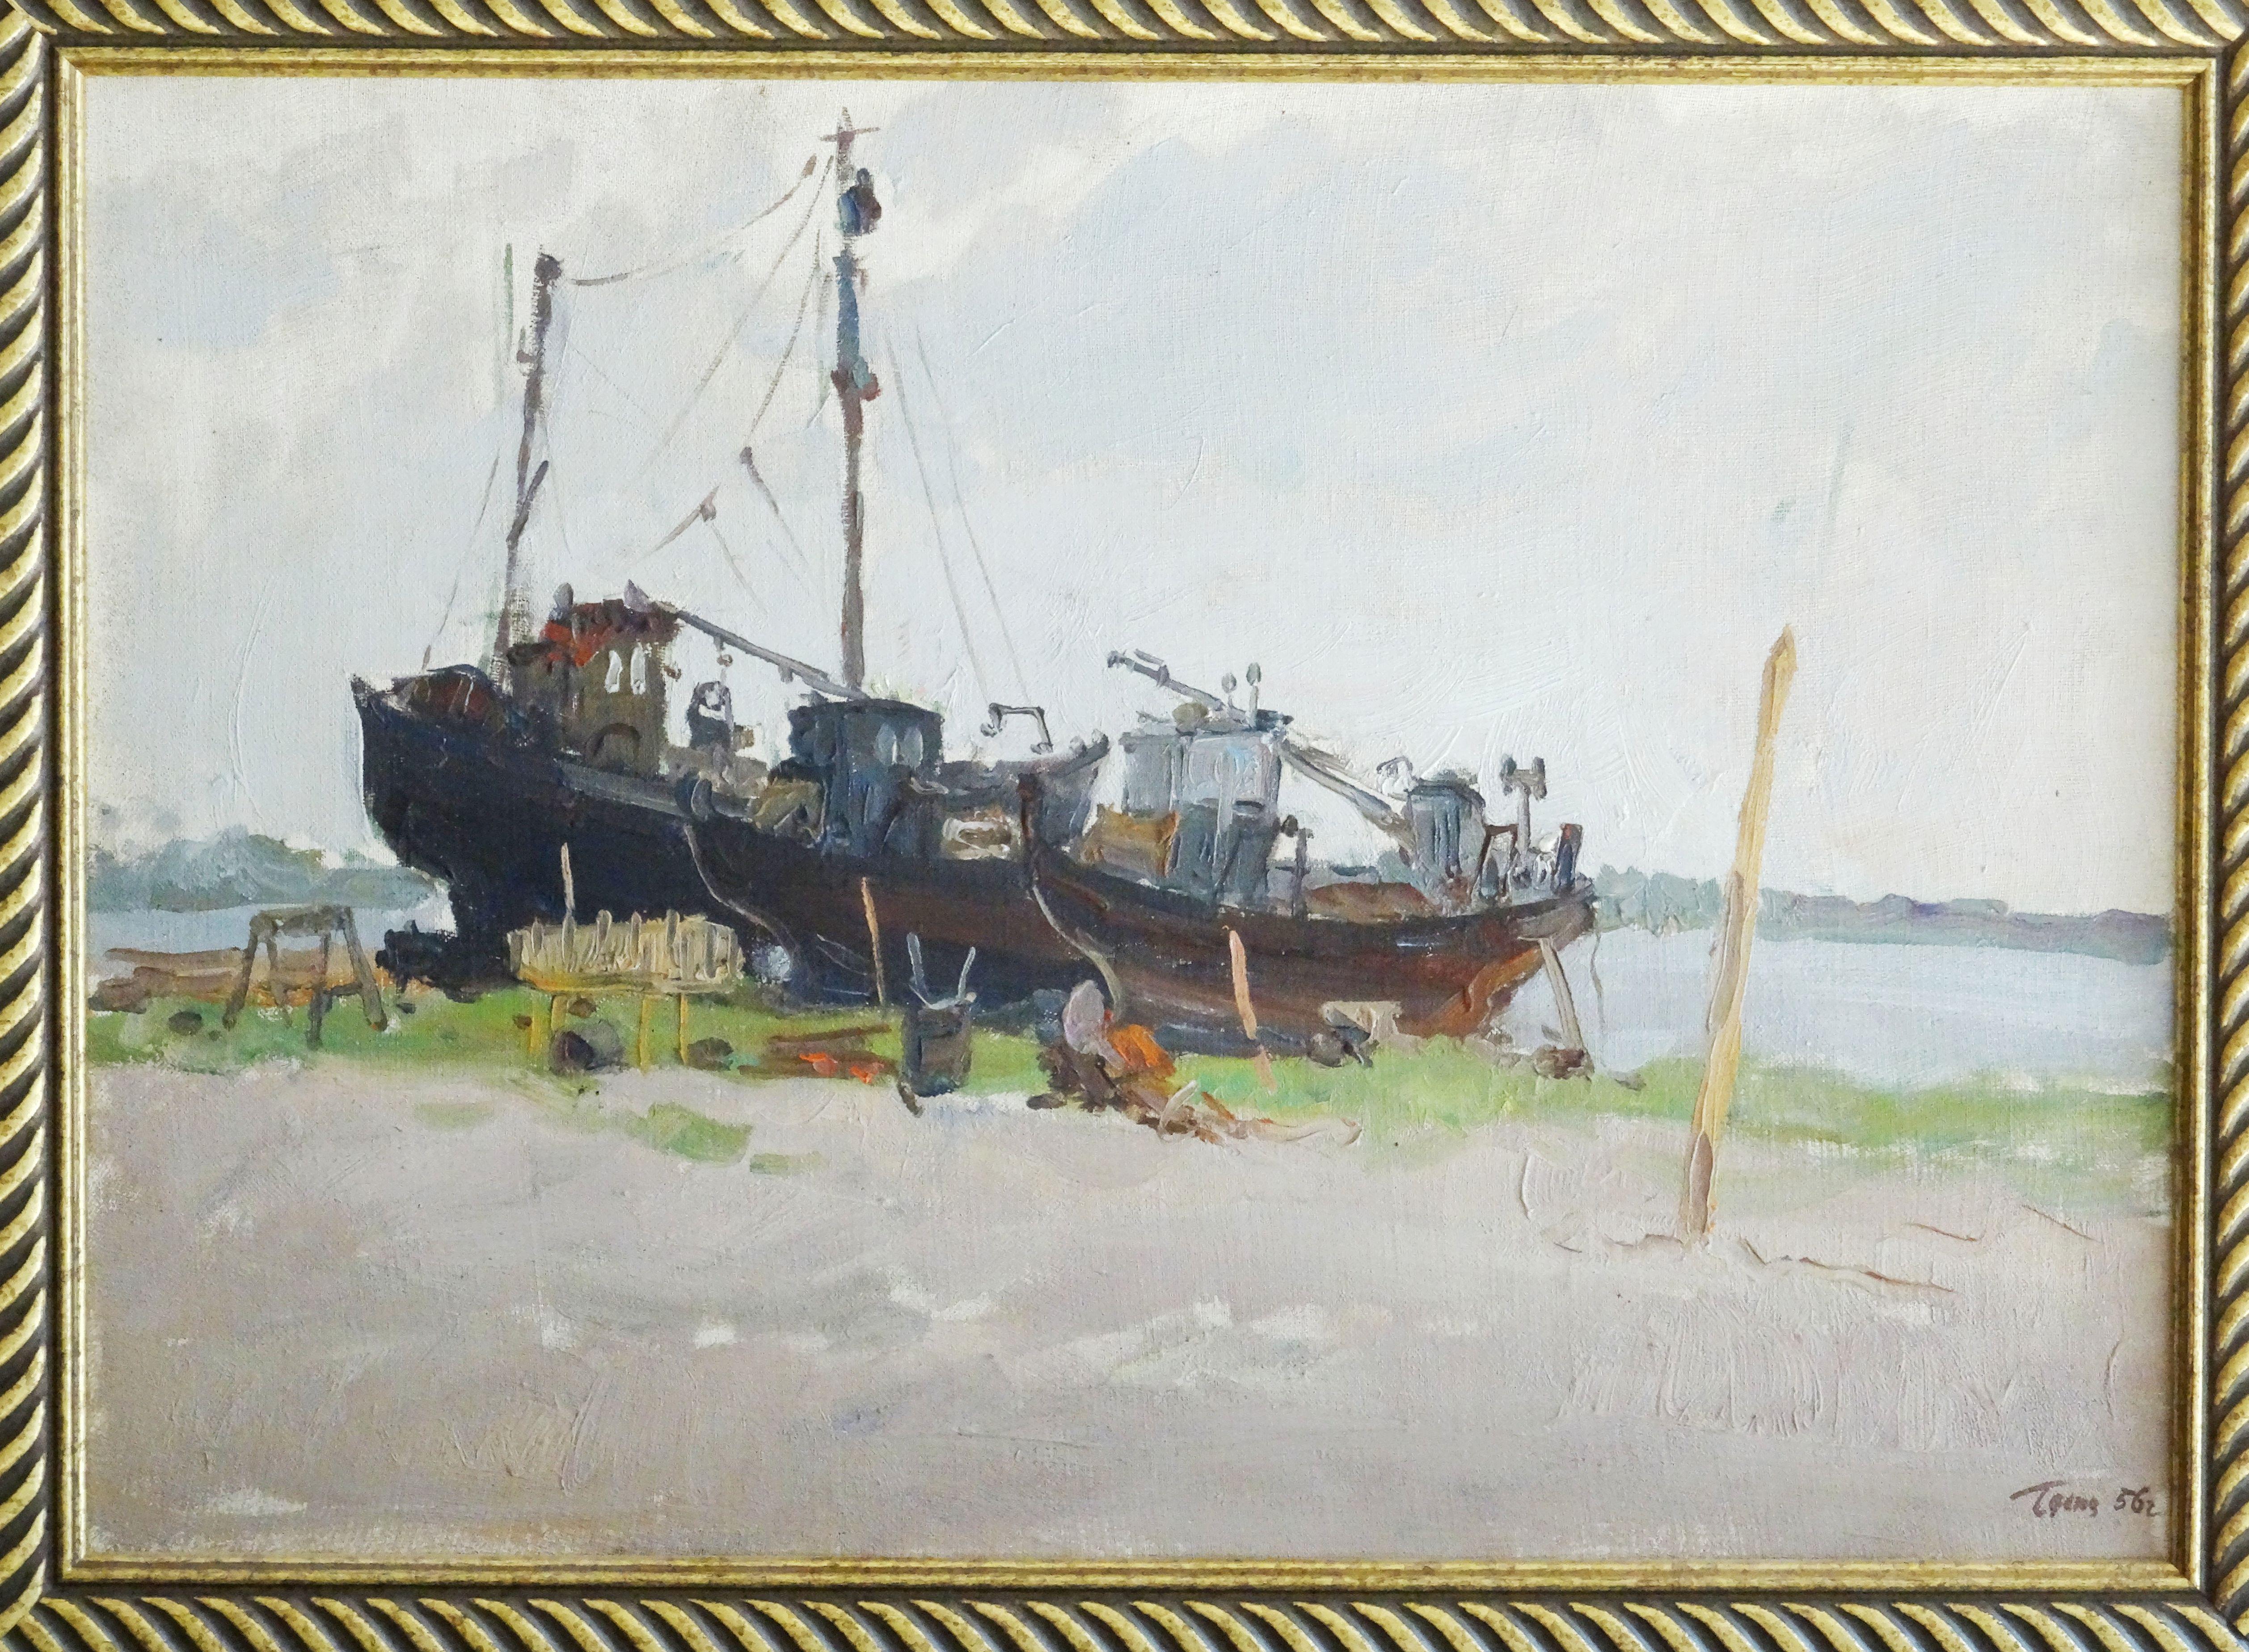 Réparation du navire. 1956, huile sur toile, carton, 43,5 x 61,5 cm - Painting de German Dontsov